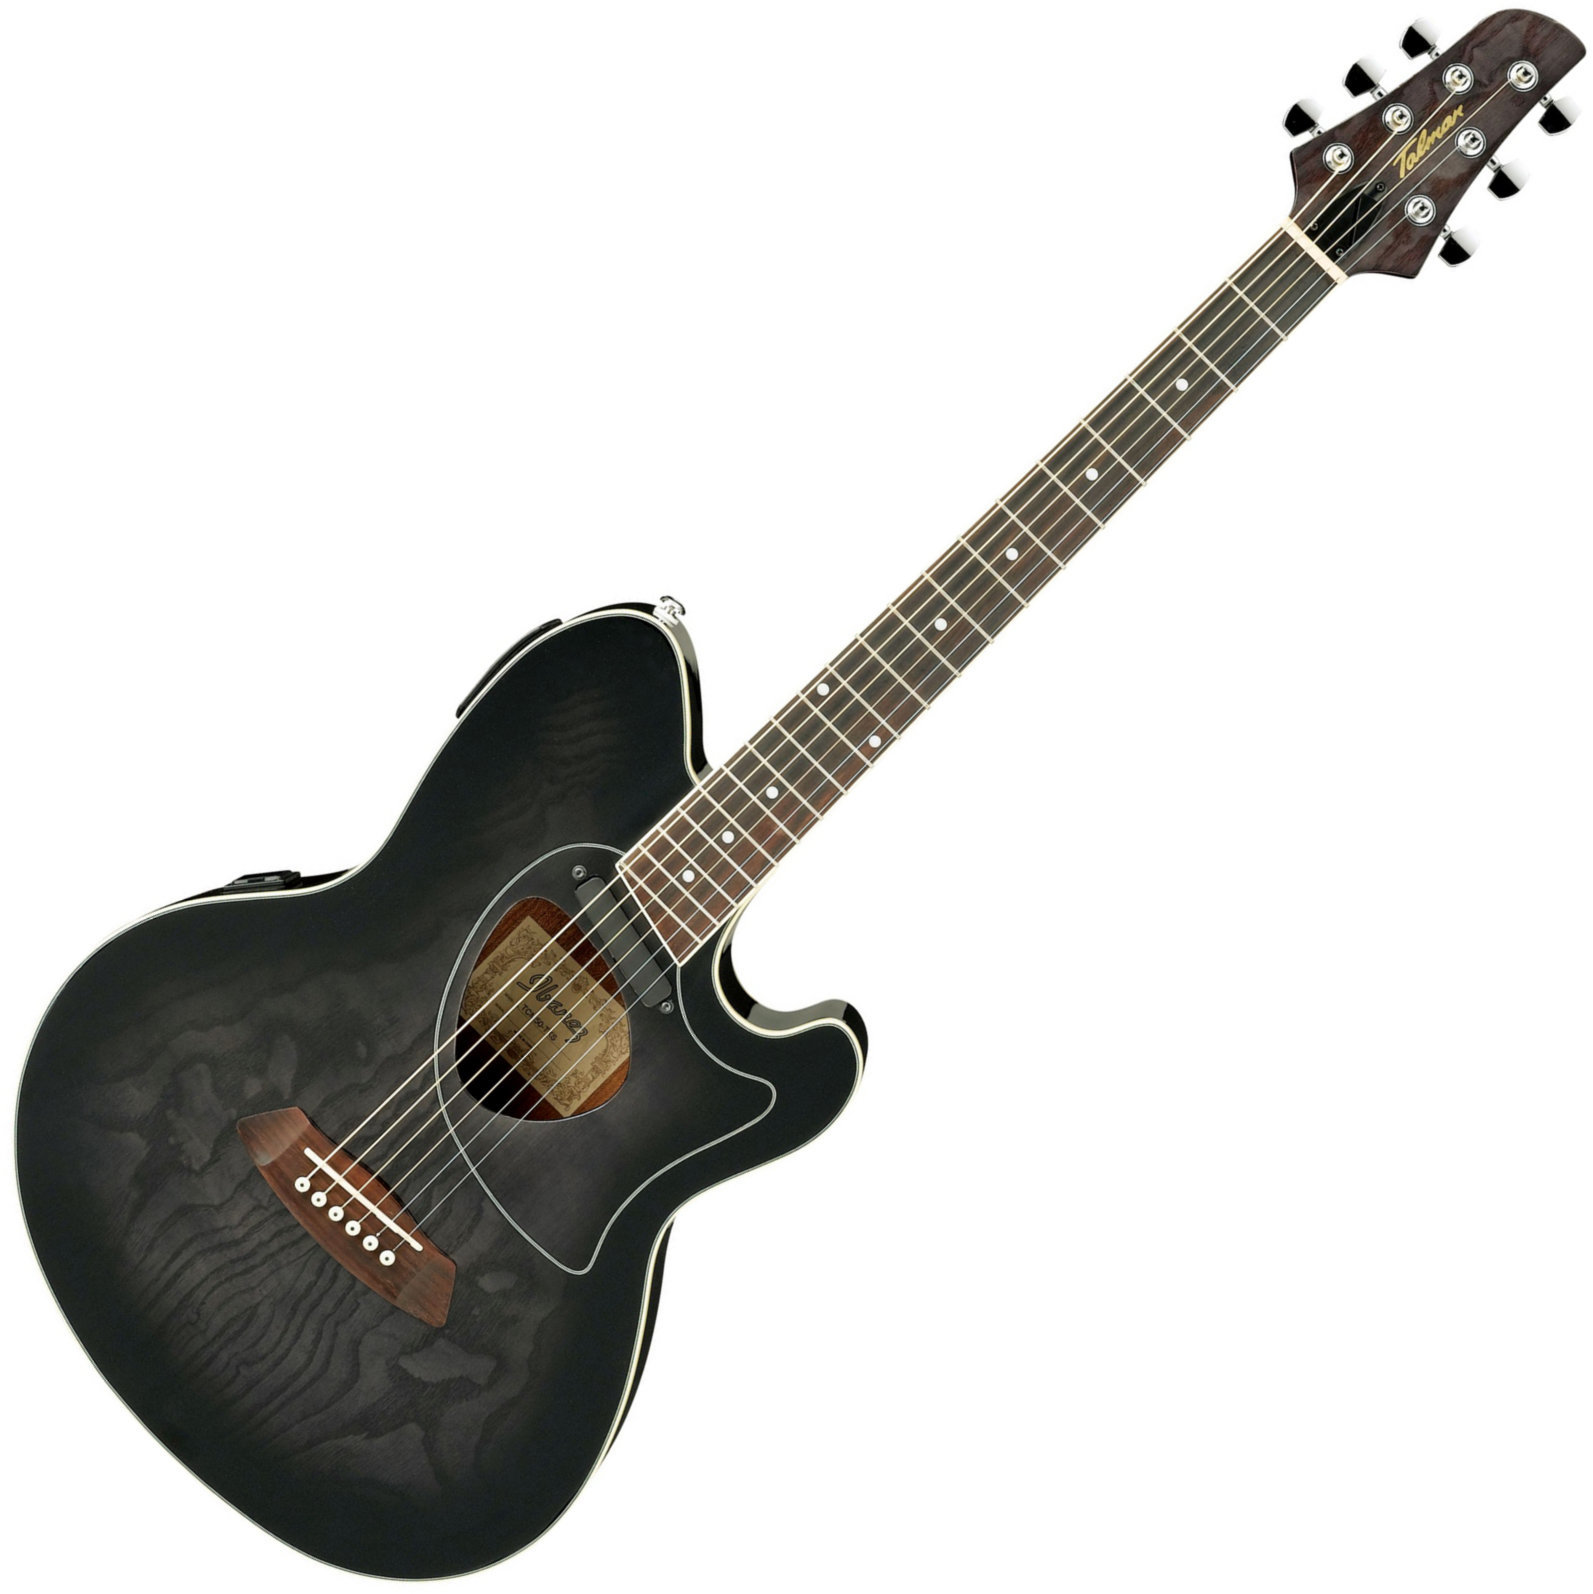 Ηλεκτροακουστική Κιθάρα Ibanez TCM50 Transparent Black Sunburst